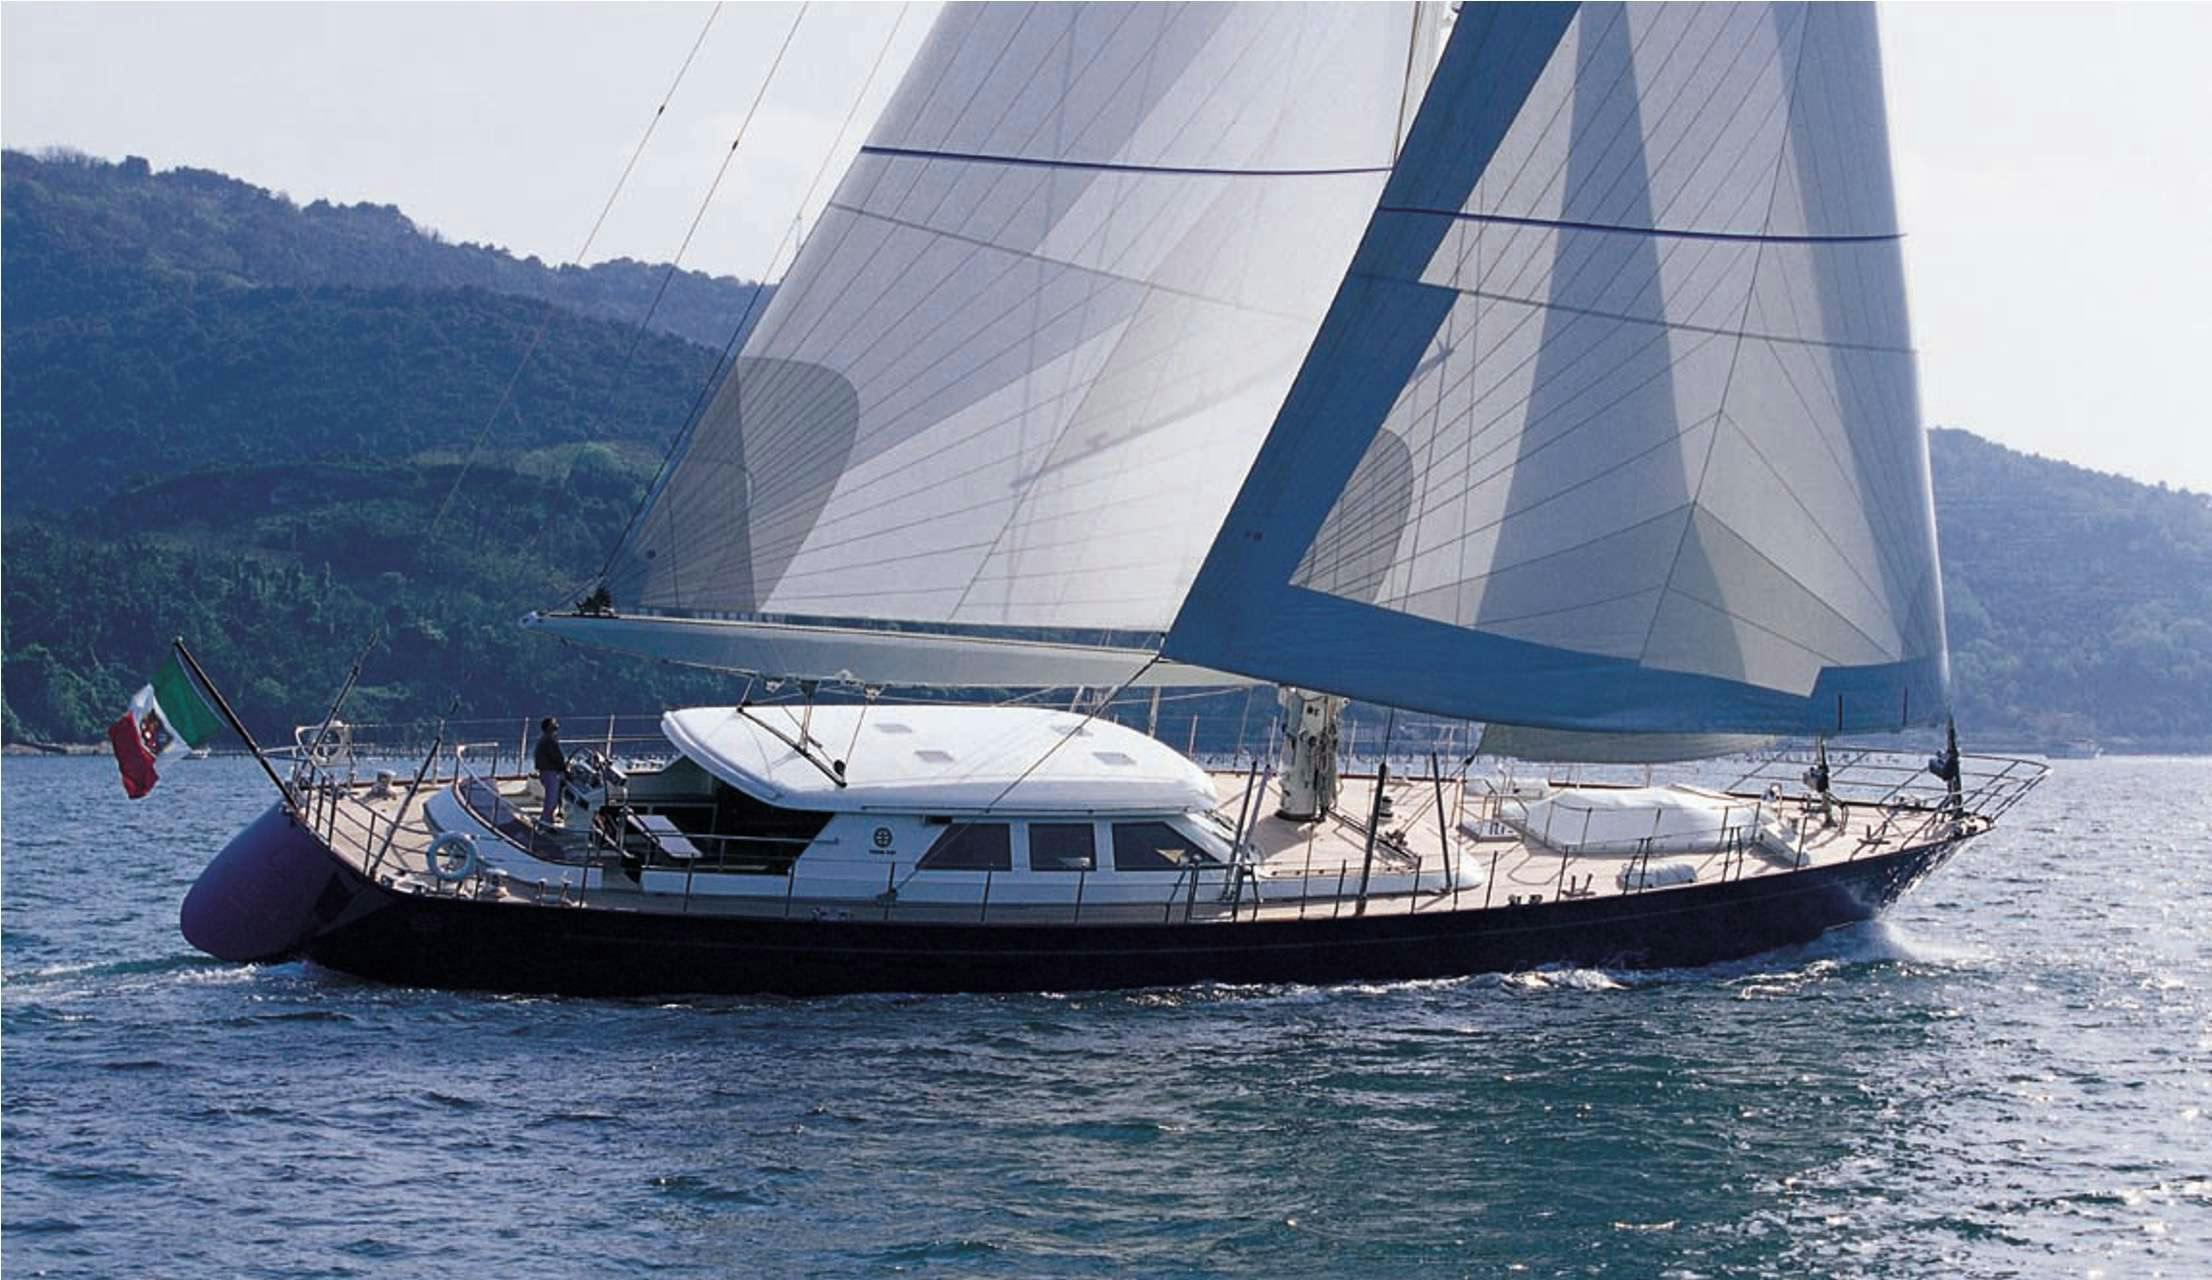 HERITAGE M - Yacht Charter Scarlino & Boat hire in Fr. Riviera & Tyrrhenian Sea 1